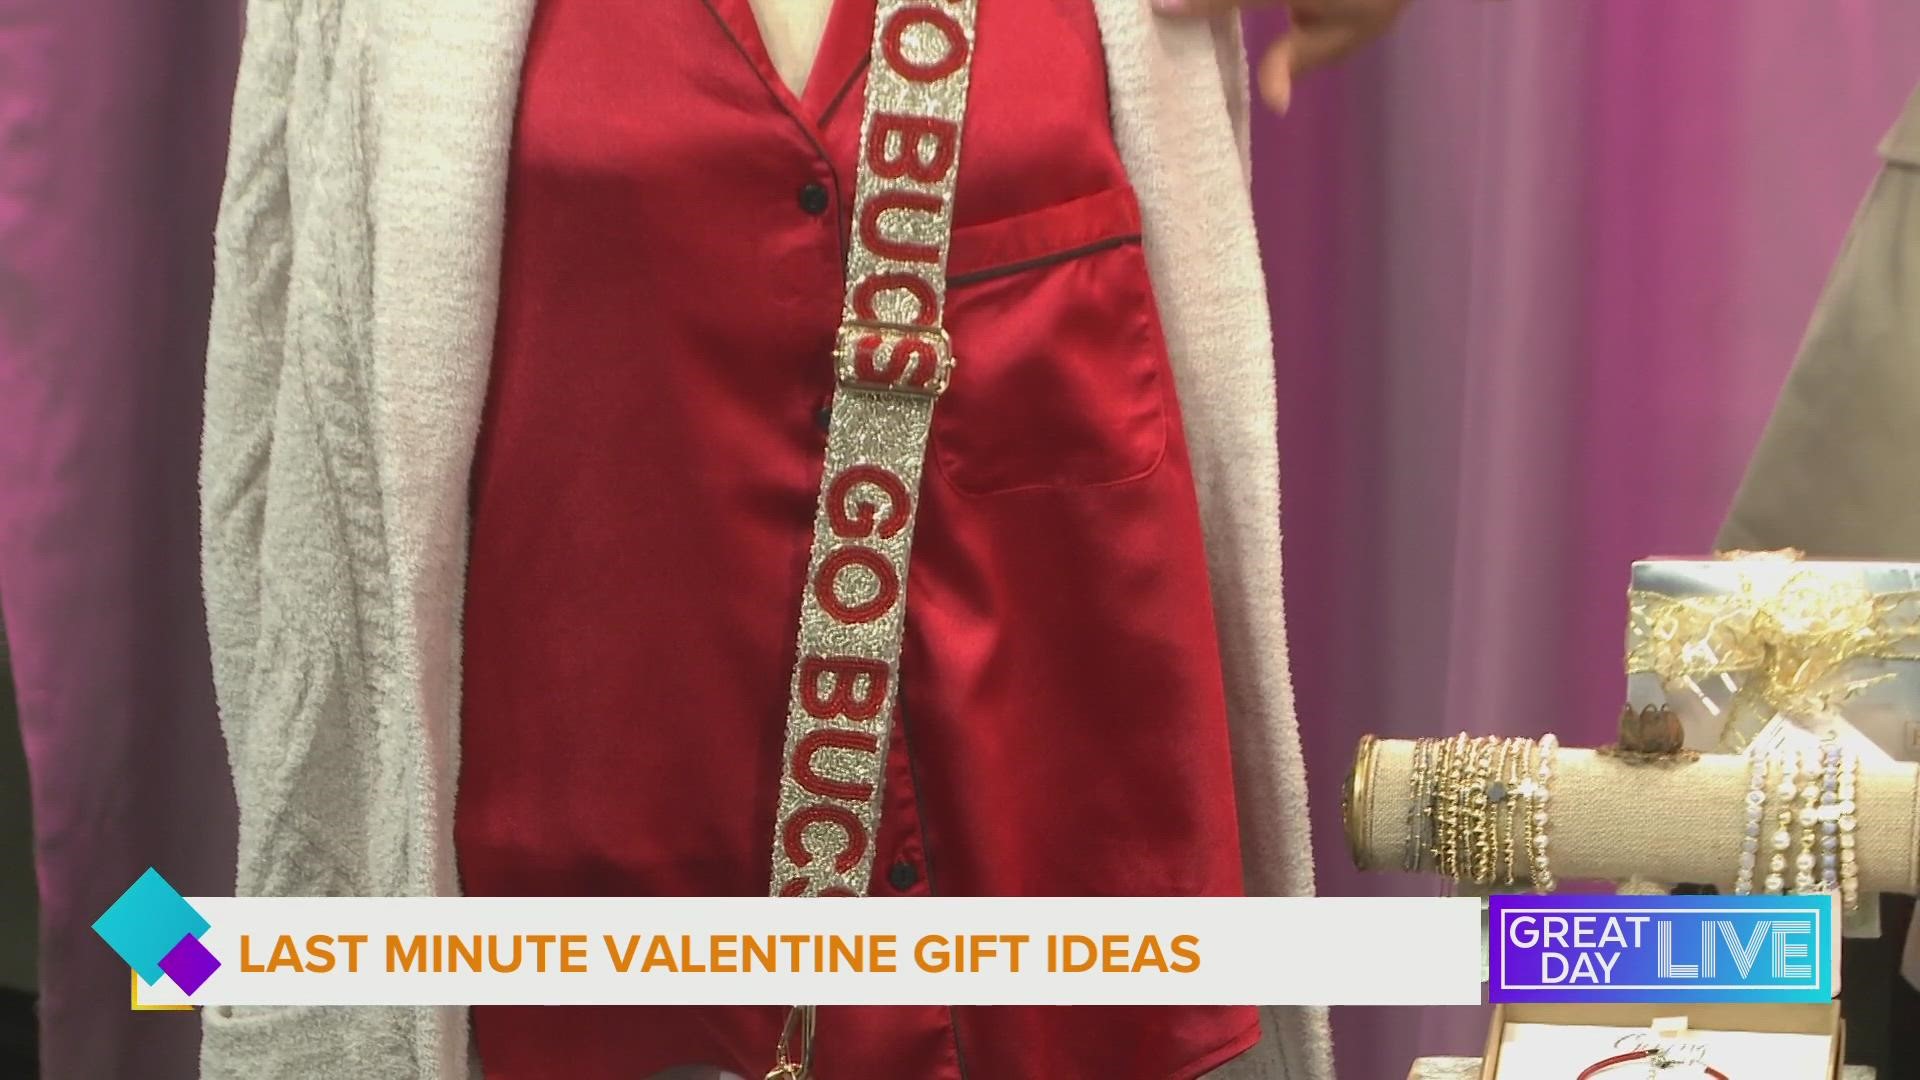 Last minute valentines gift ideas